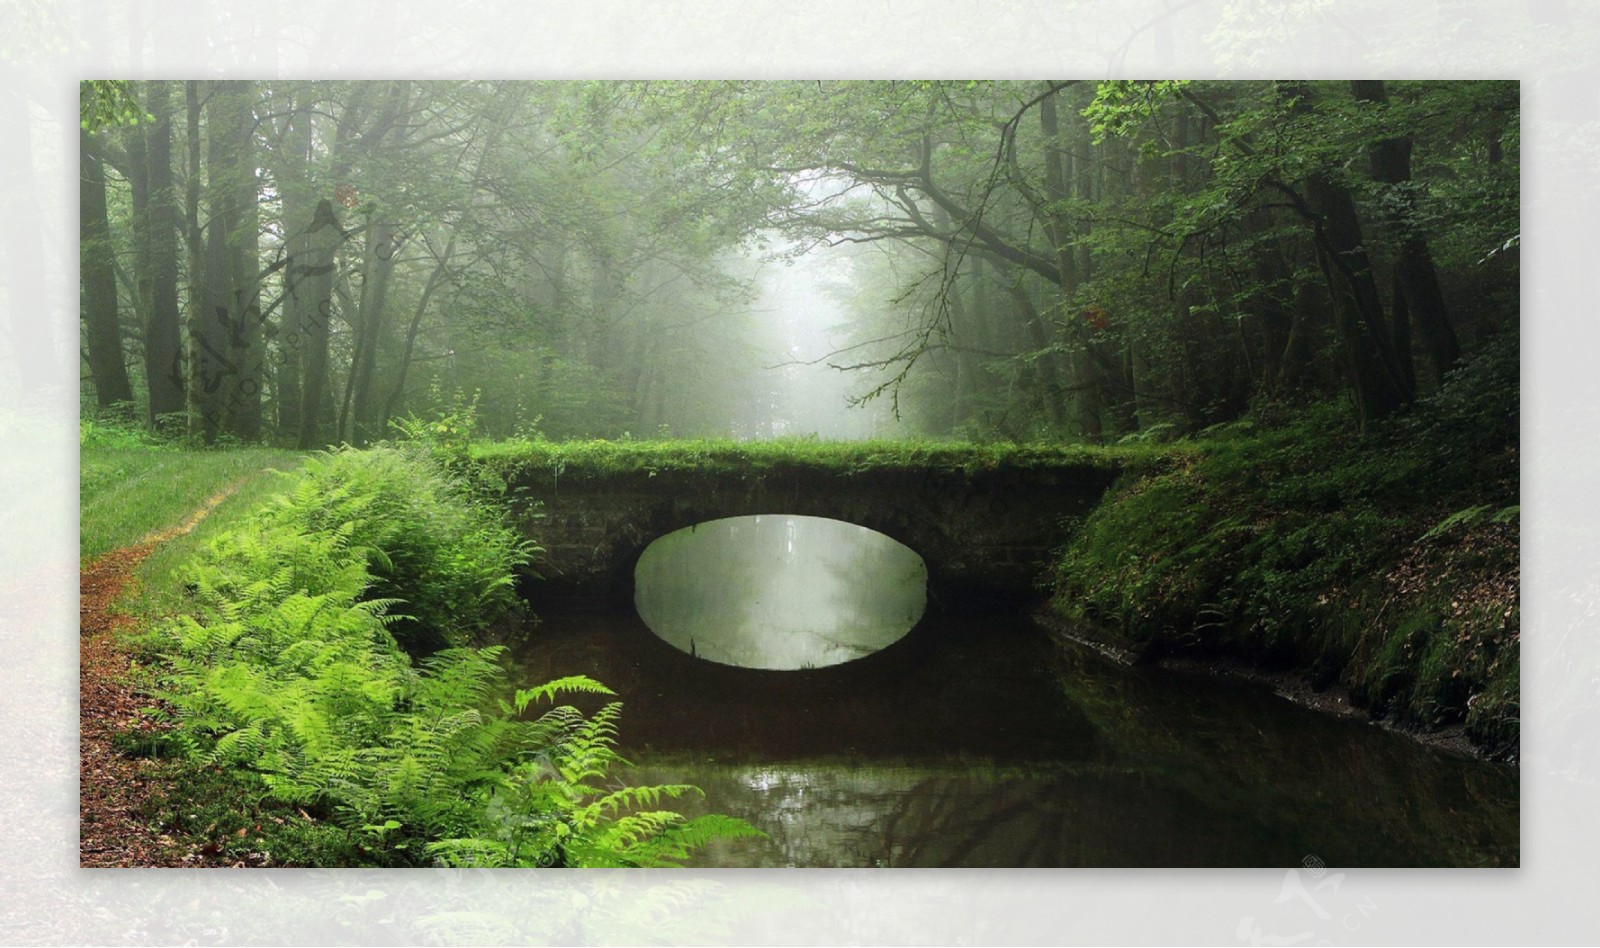 晨雾森林石桥